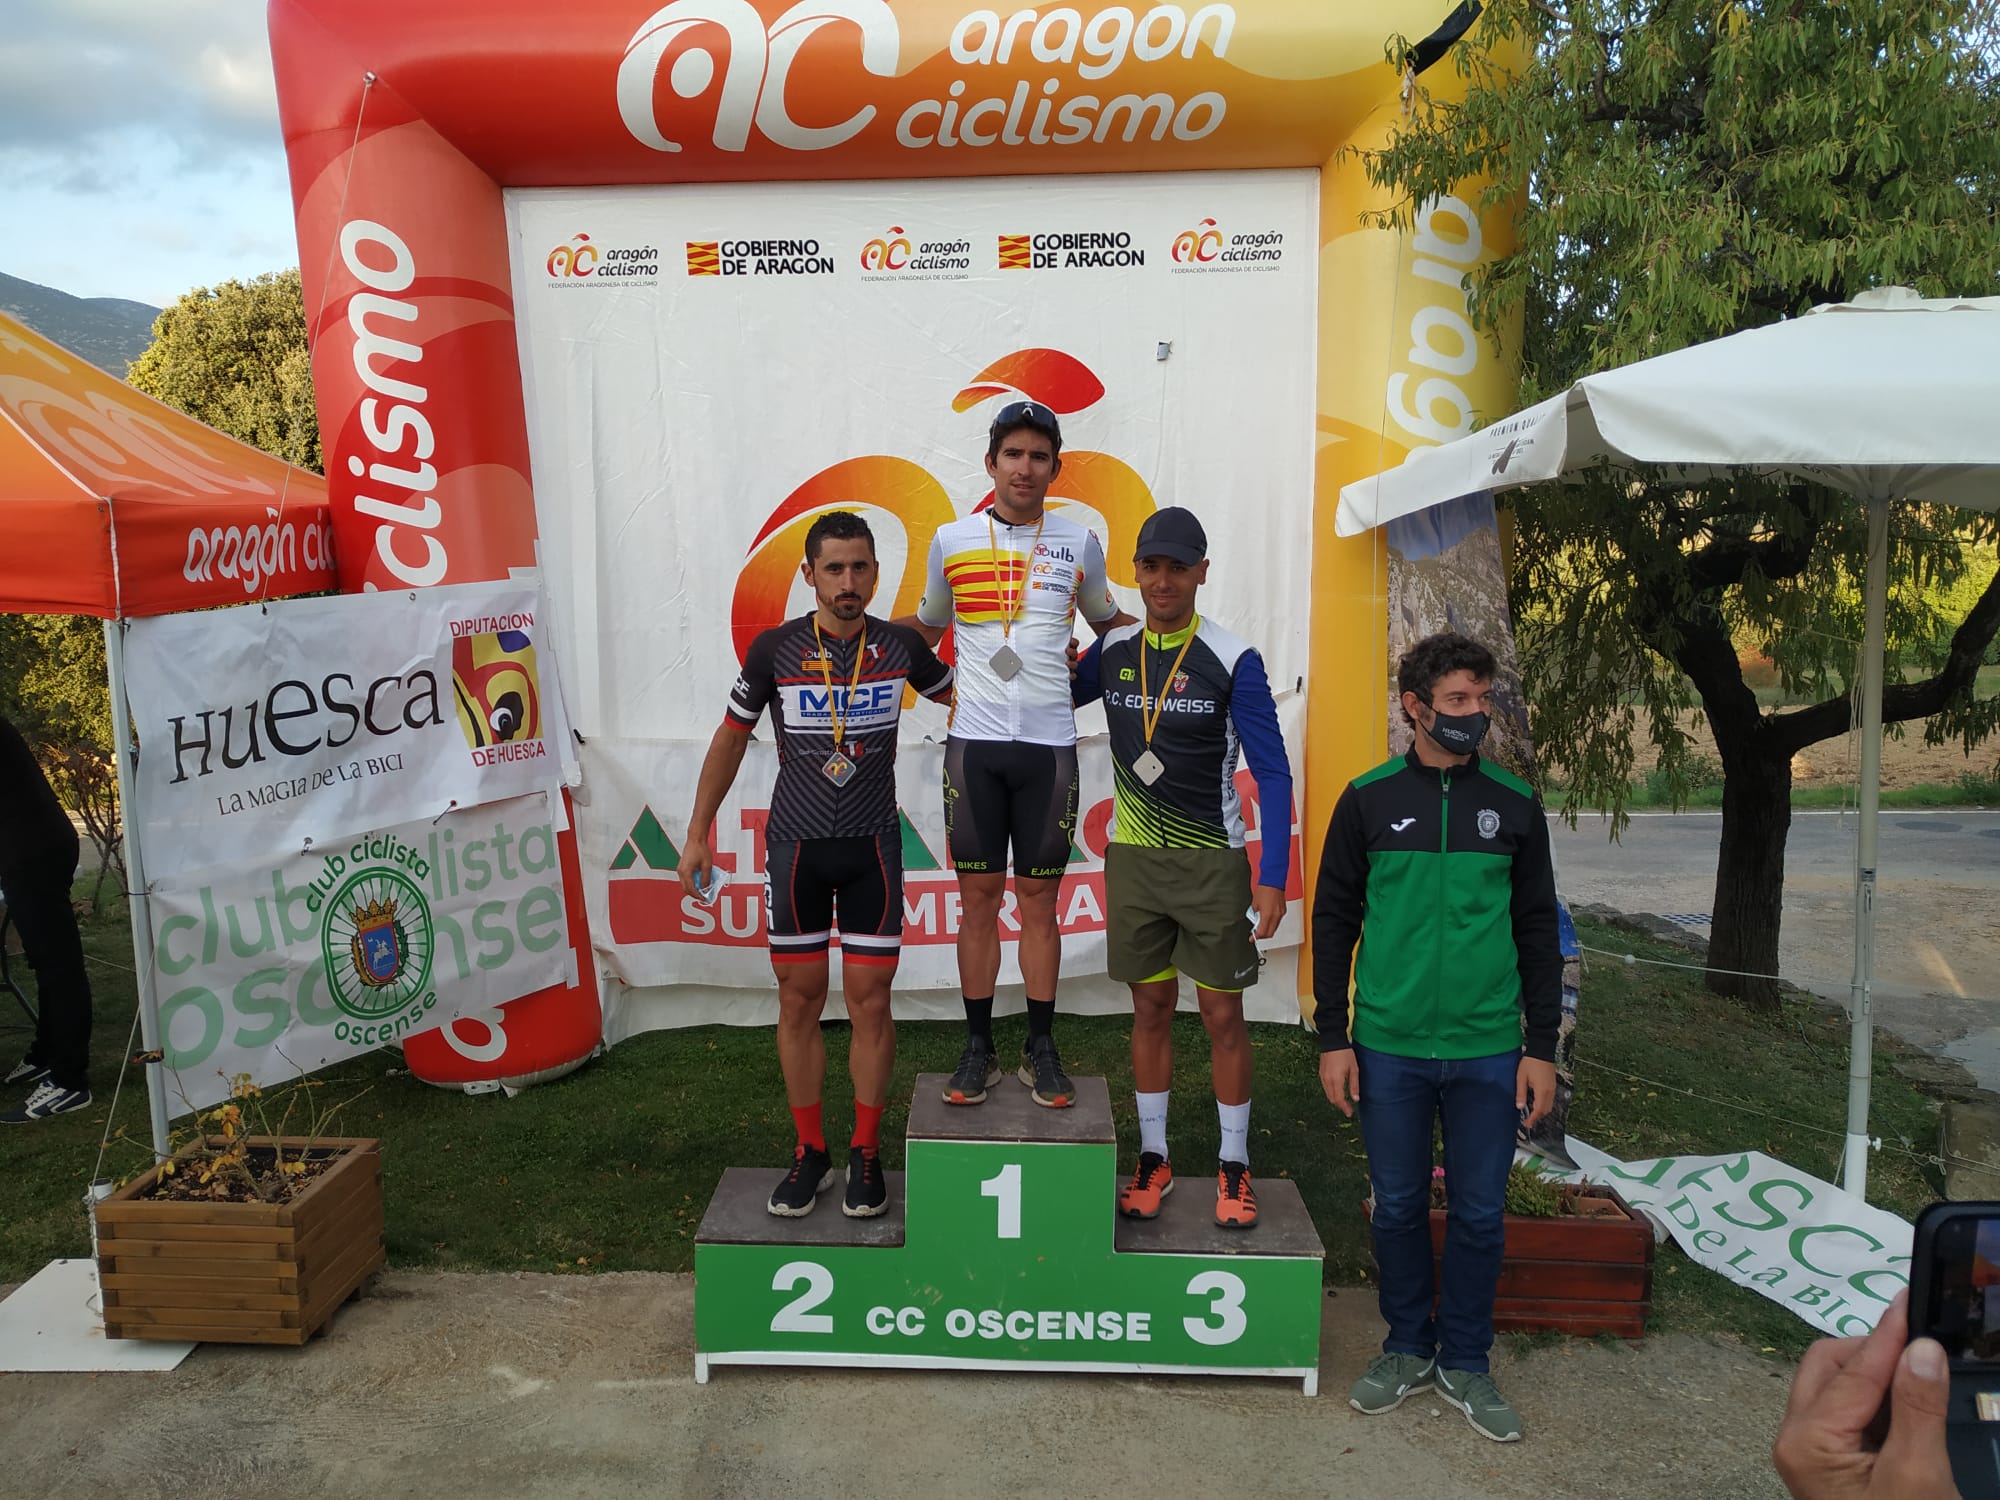 Gran jornada de ciclismo la vivida con la celebración de los Campeonatos de Aragón Ruta